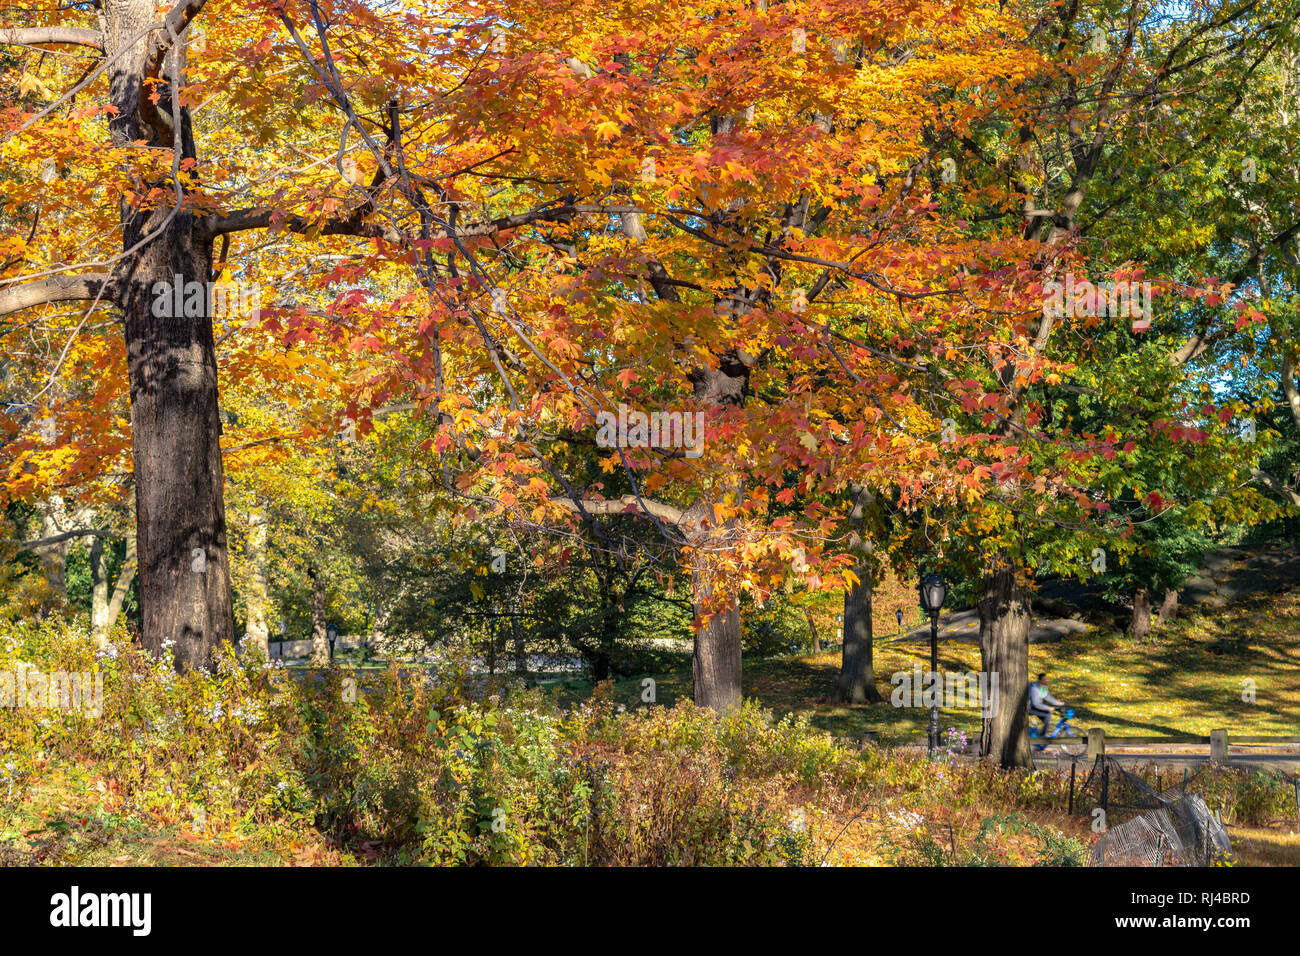 Árboles de vibrantes colores de otoño/temporada de otoño junto a caminar/caballo trail en Central Park, New York City Foto de stock